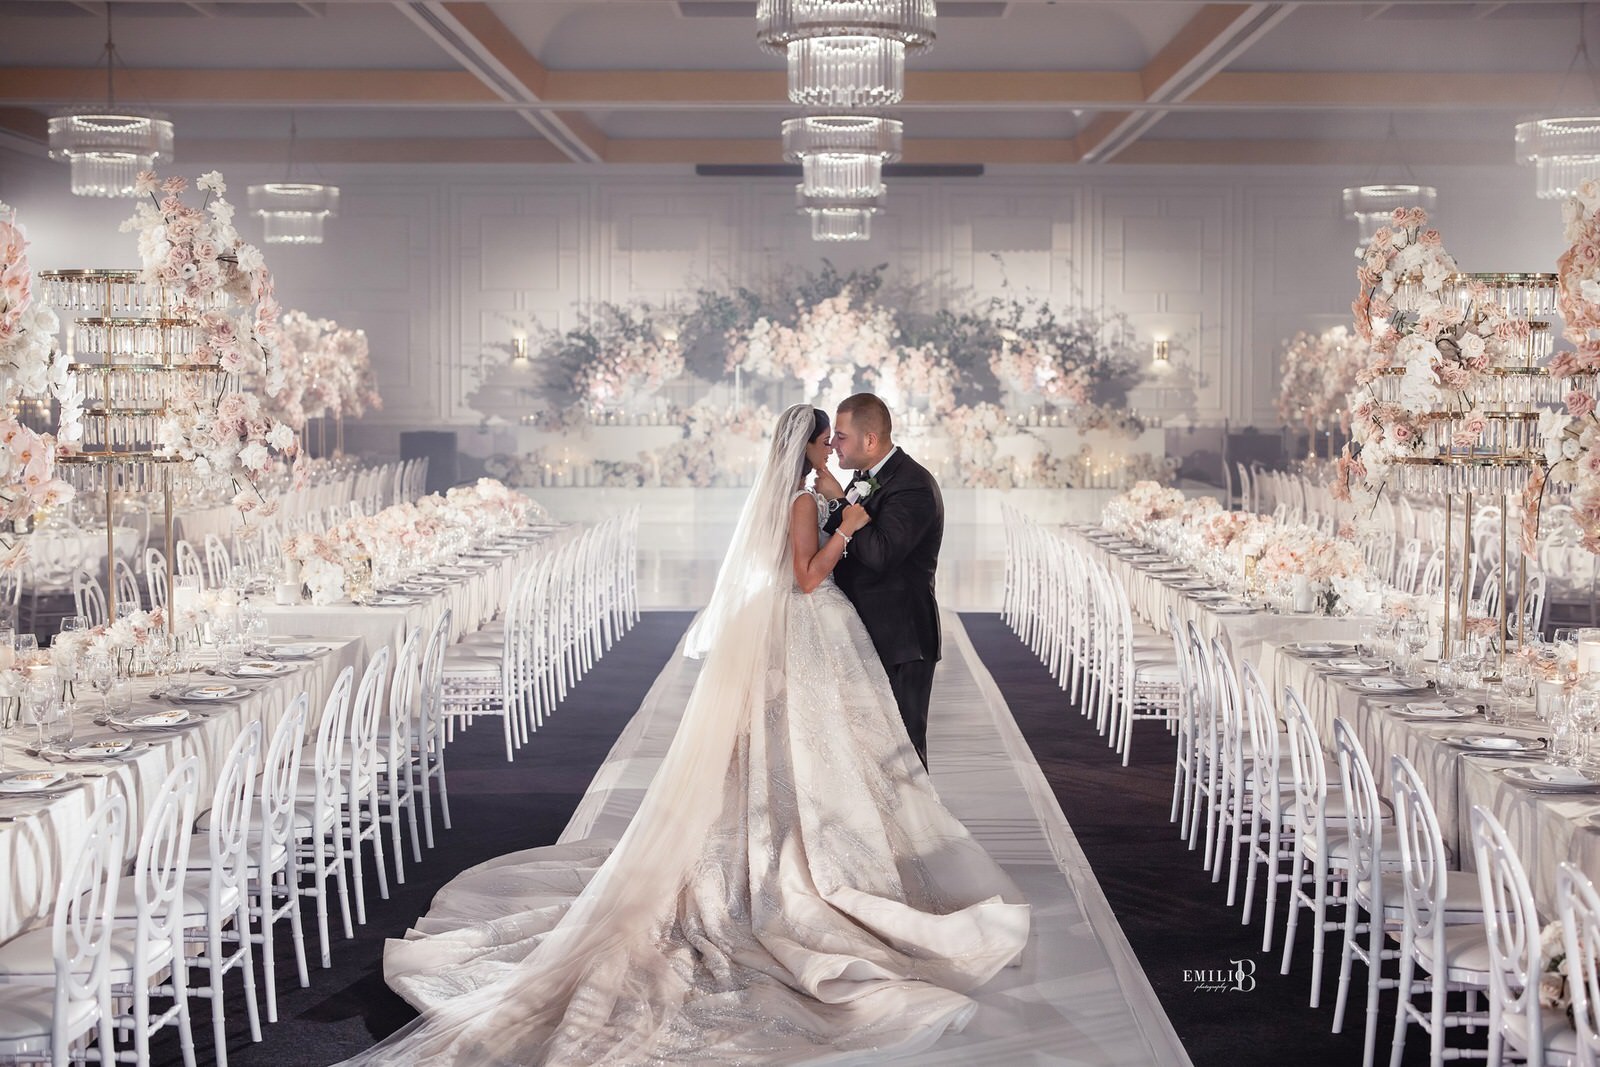 Evlenme ve Düğün Masrafı En Az 250.000 TL: Birbirinden Orijinal Cevaplar!